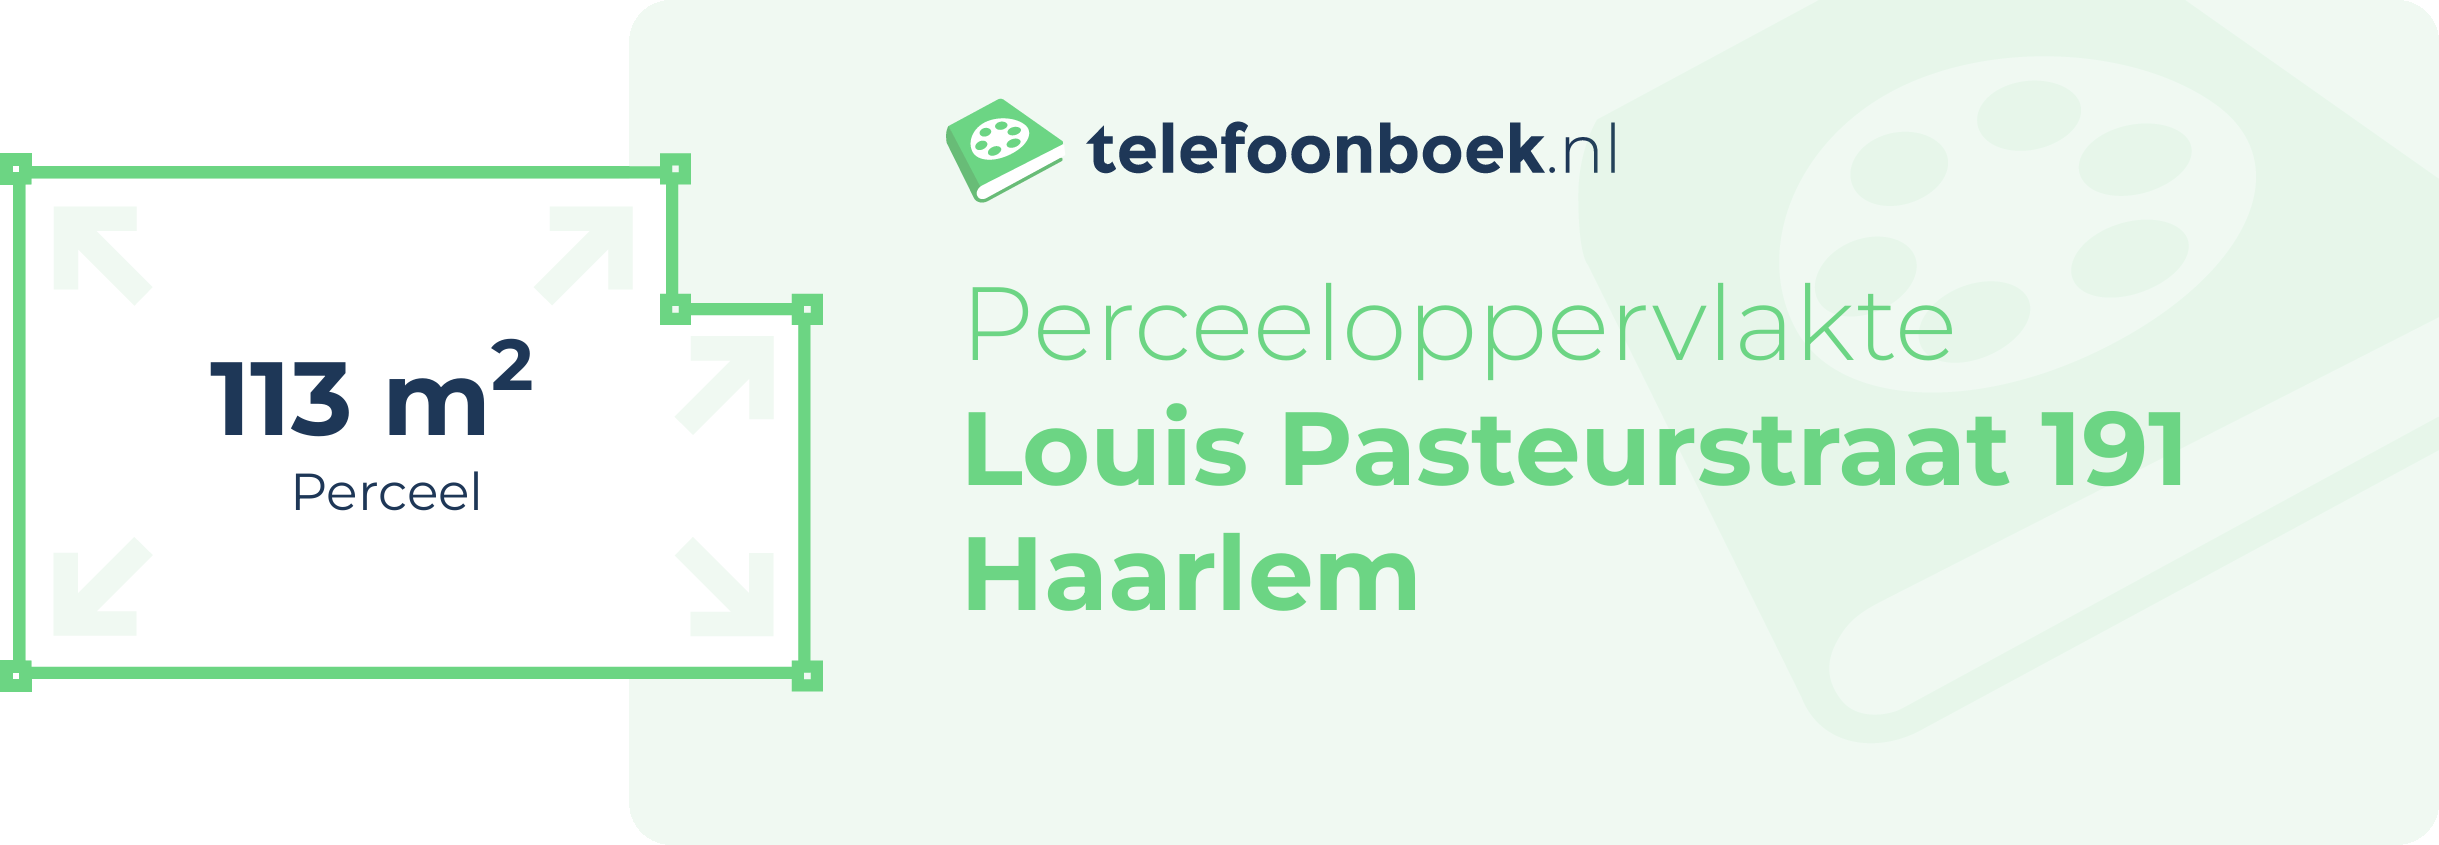 Perceeloppervlakte Louis Pasteurstraat 191 Haarlem